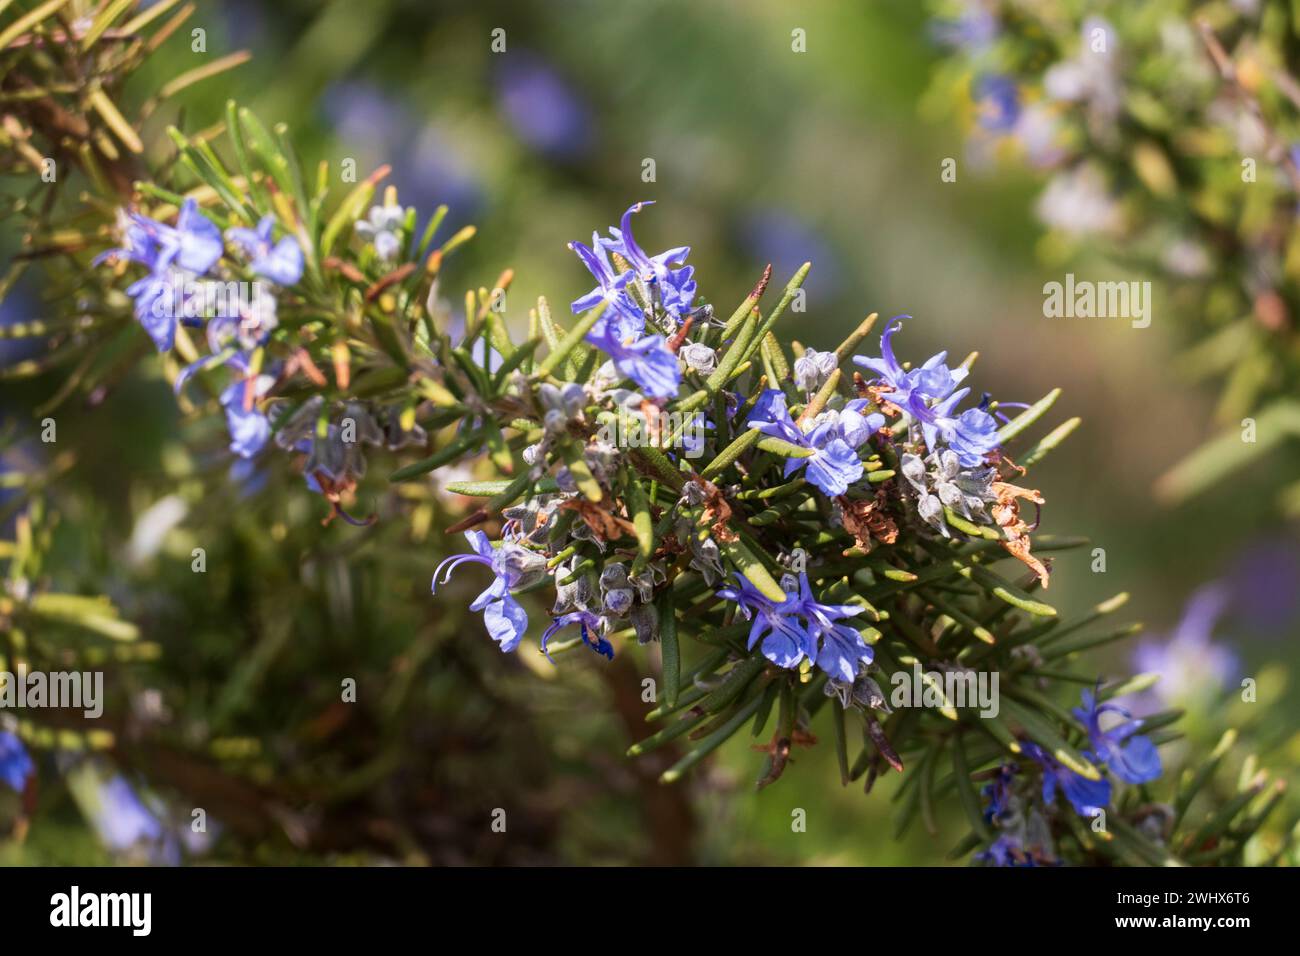 Rosmarin mit blau lila farbenen Blüten und unscharfem Hintergrund Stock Photo